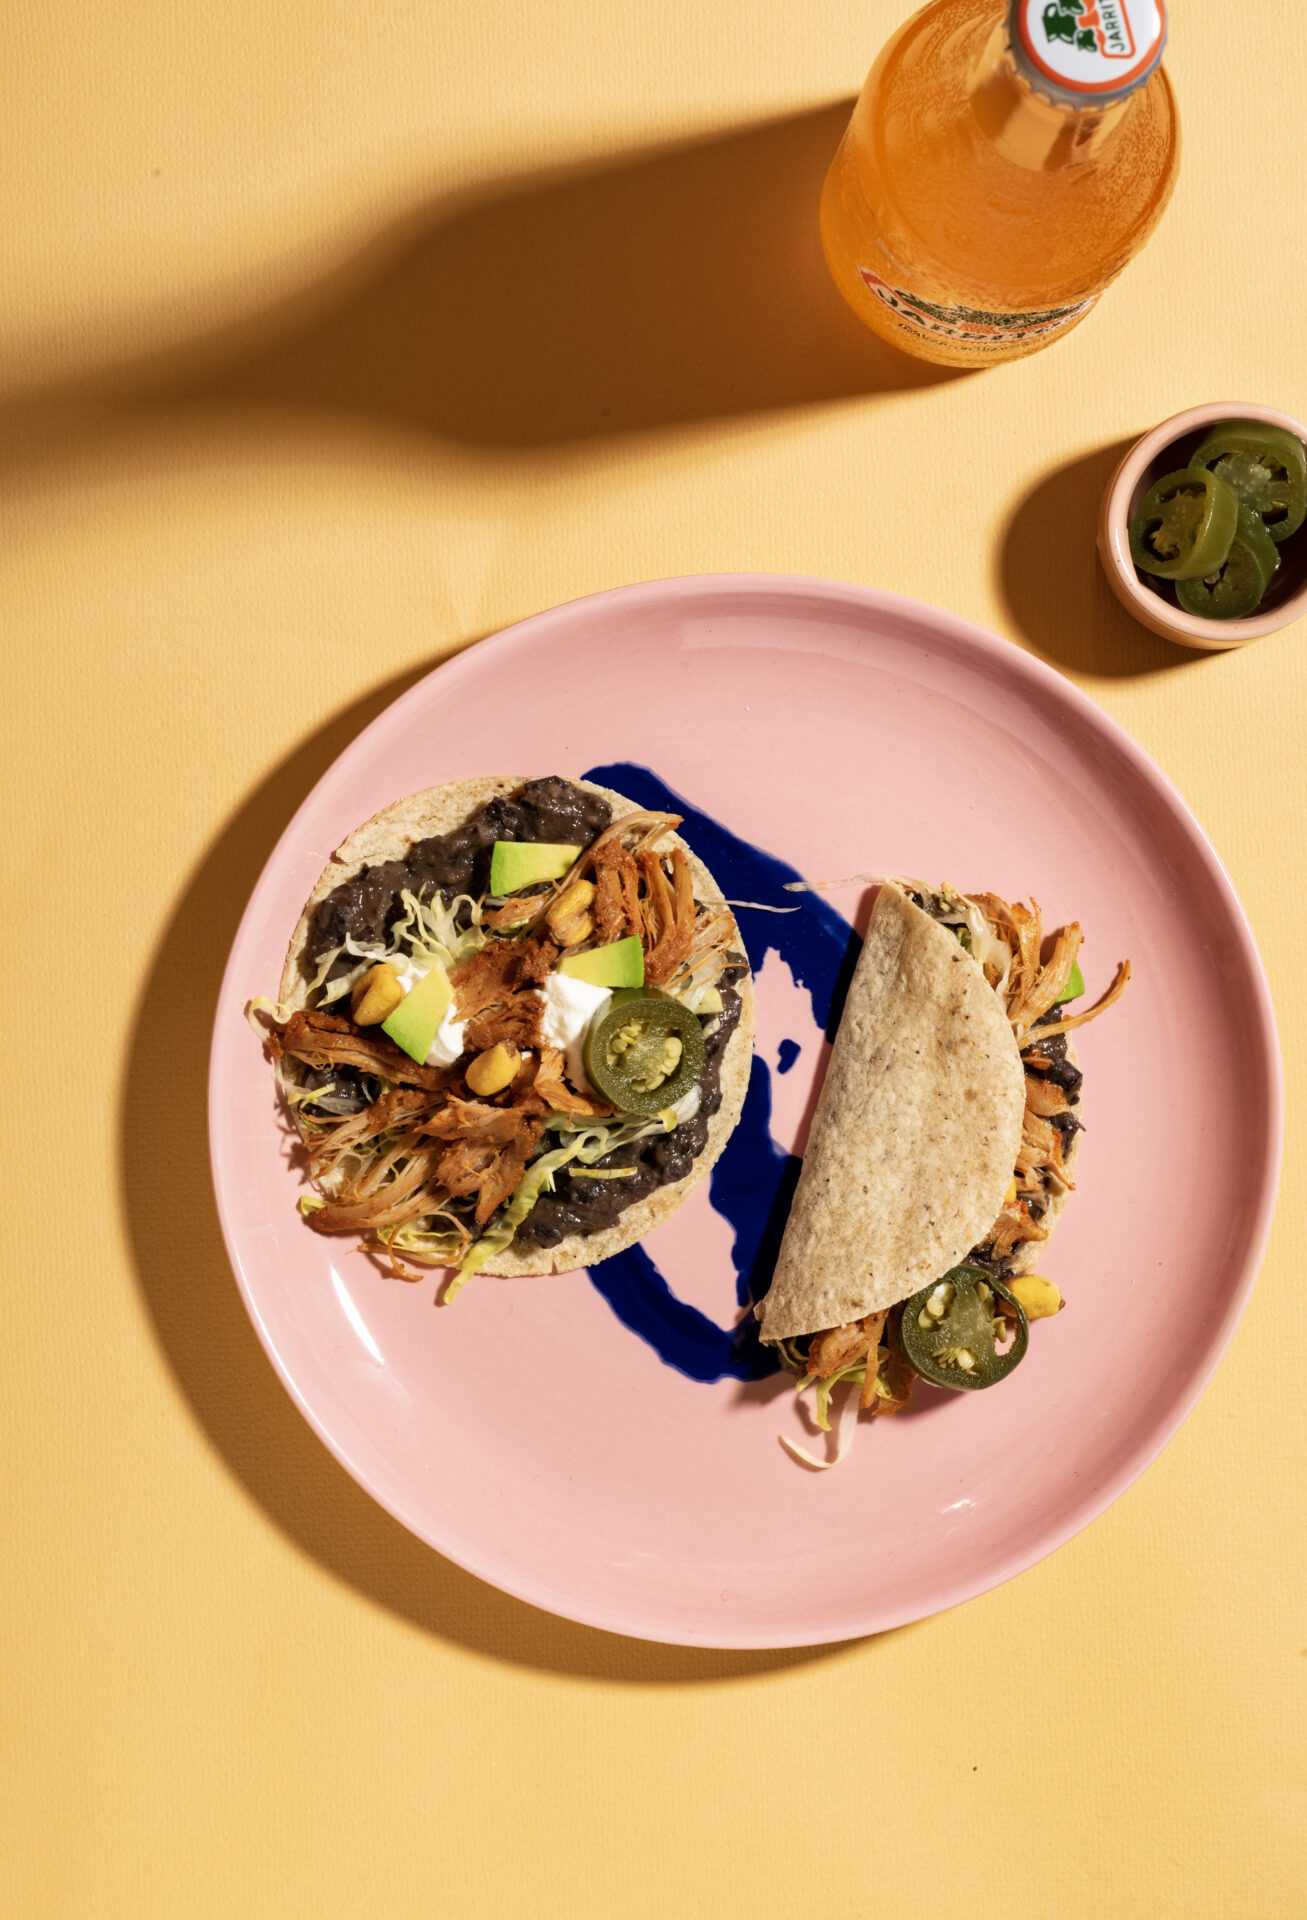 Roze bord met twee mais taco's erop daarnaast staat een flesje Mexicaanse frisdrank